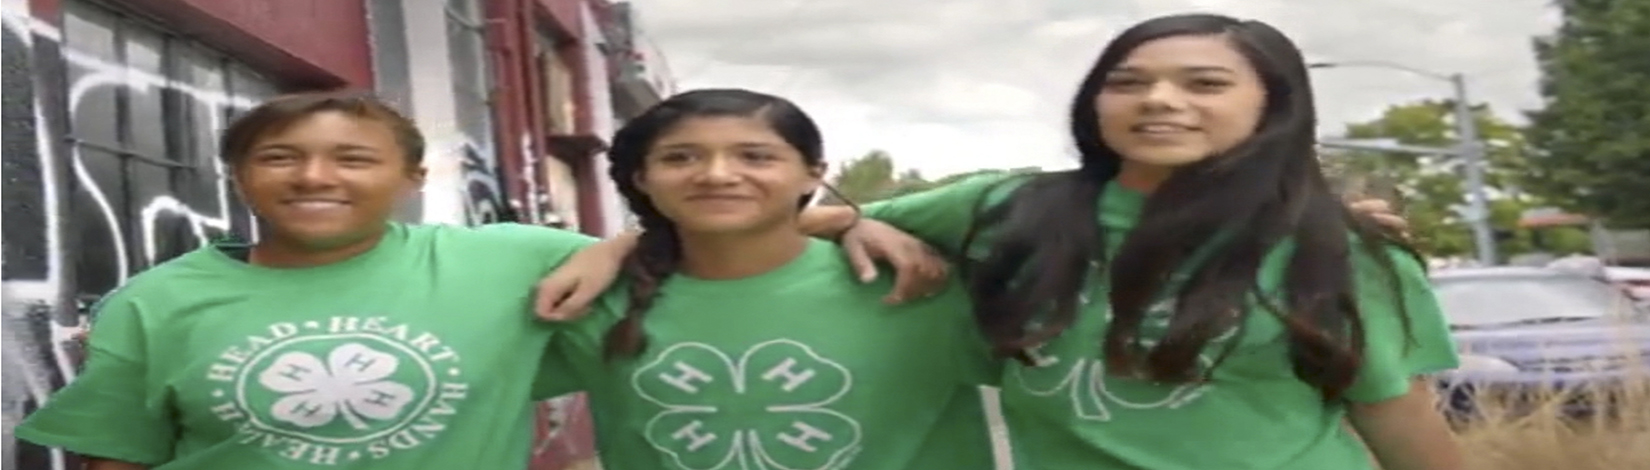 3 girls wearing green 4-H t-shirts